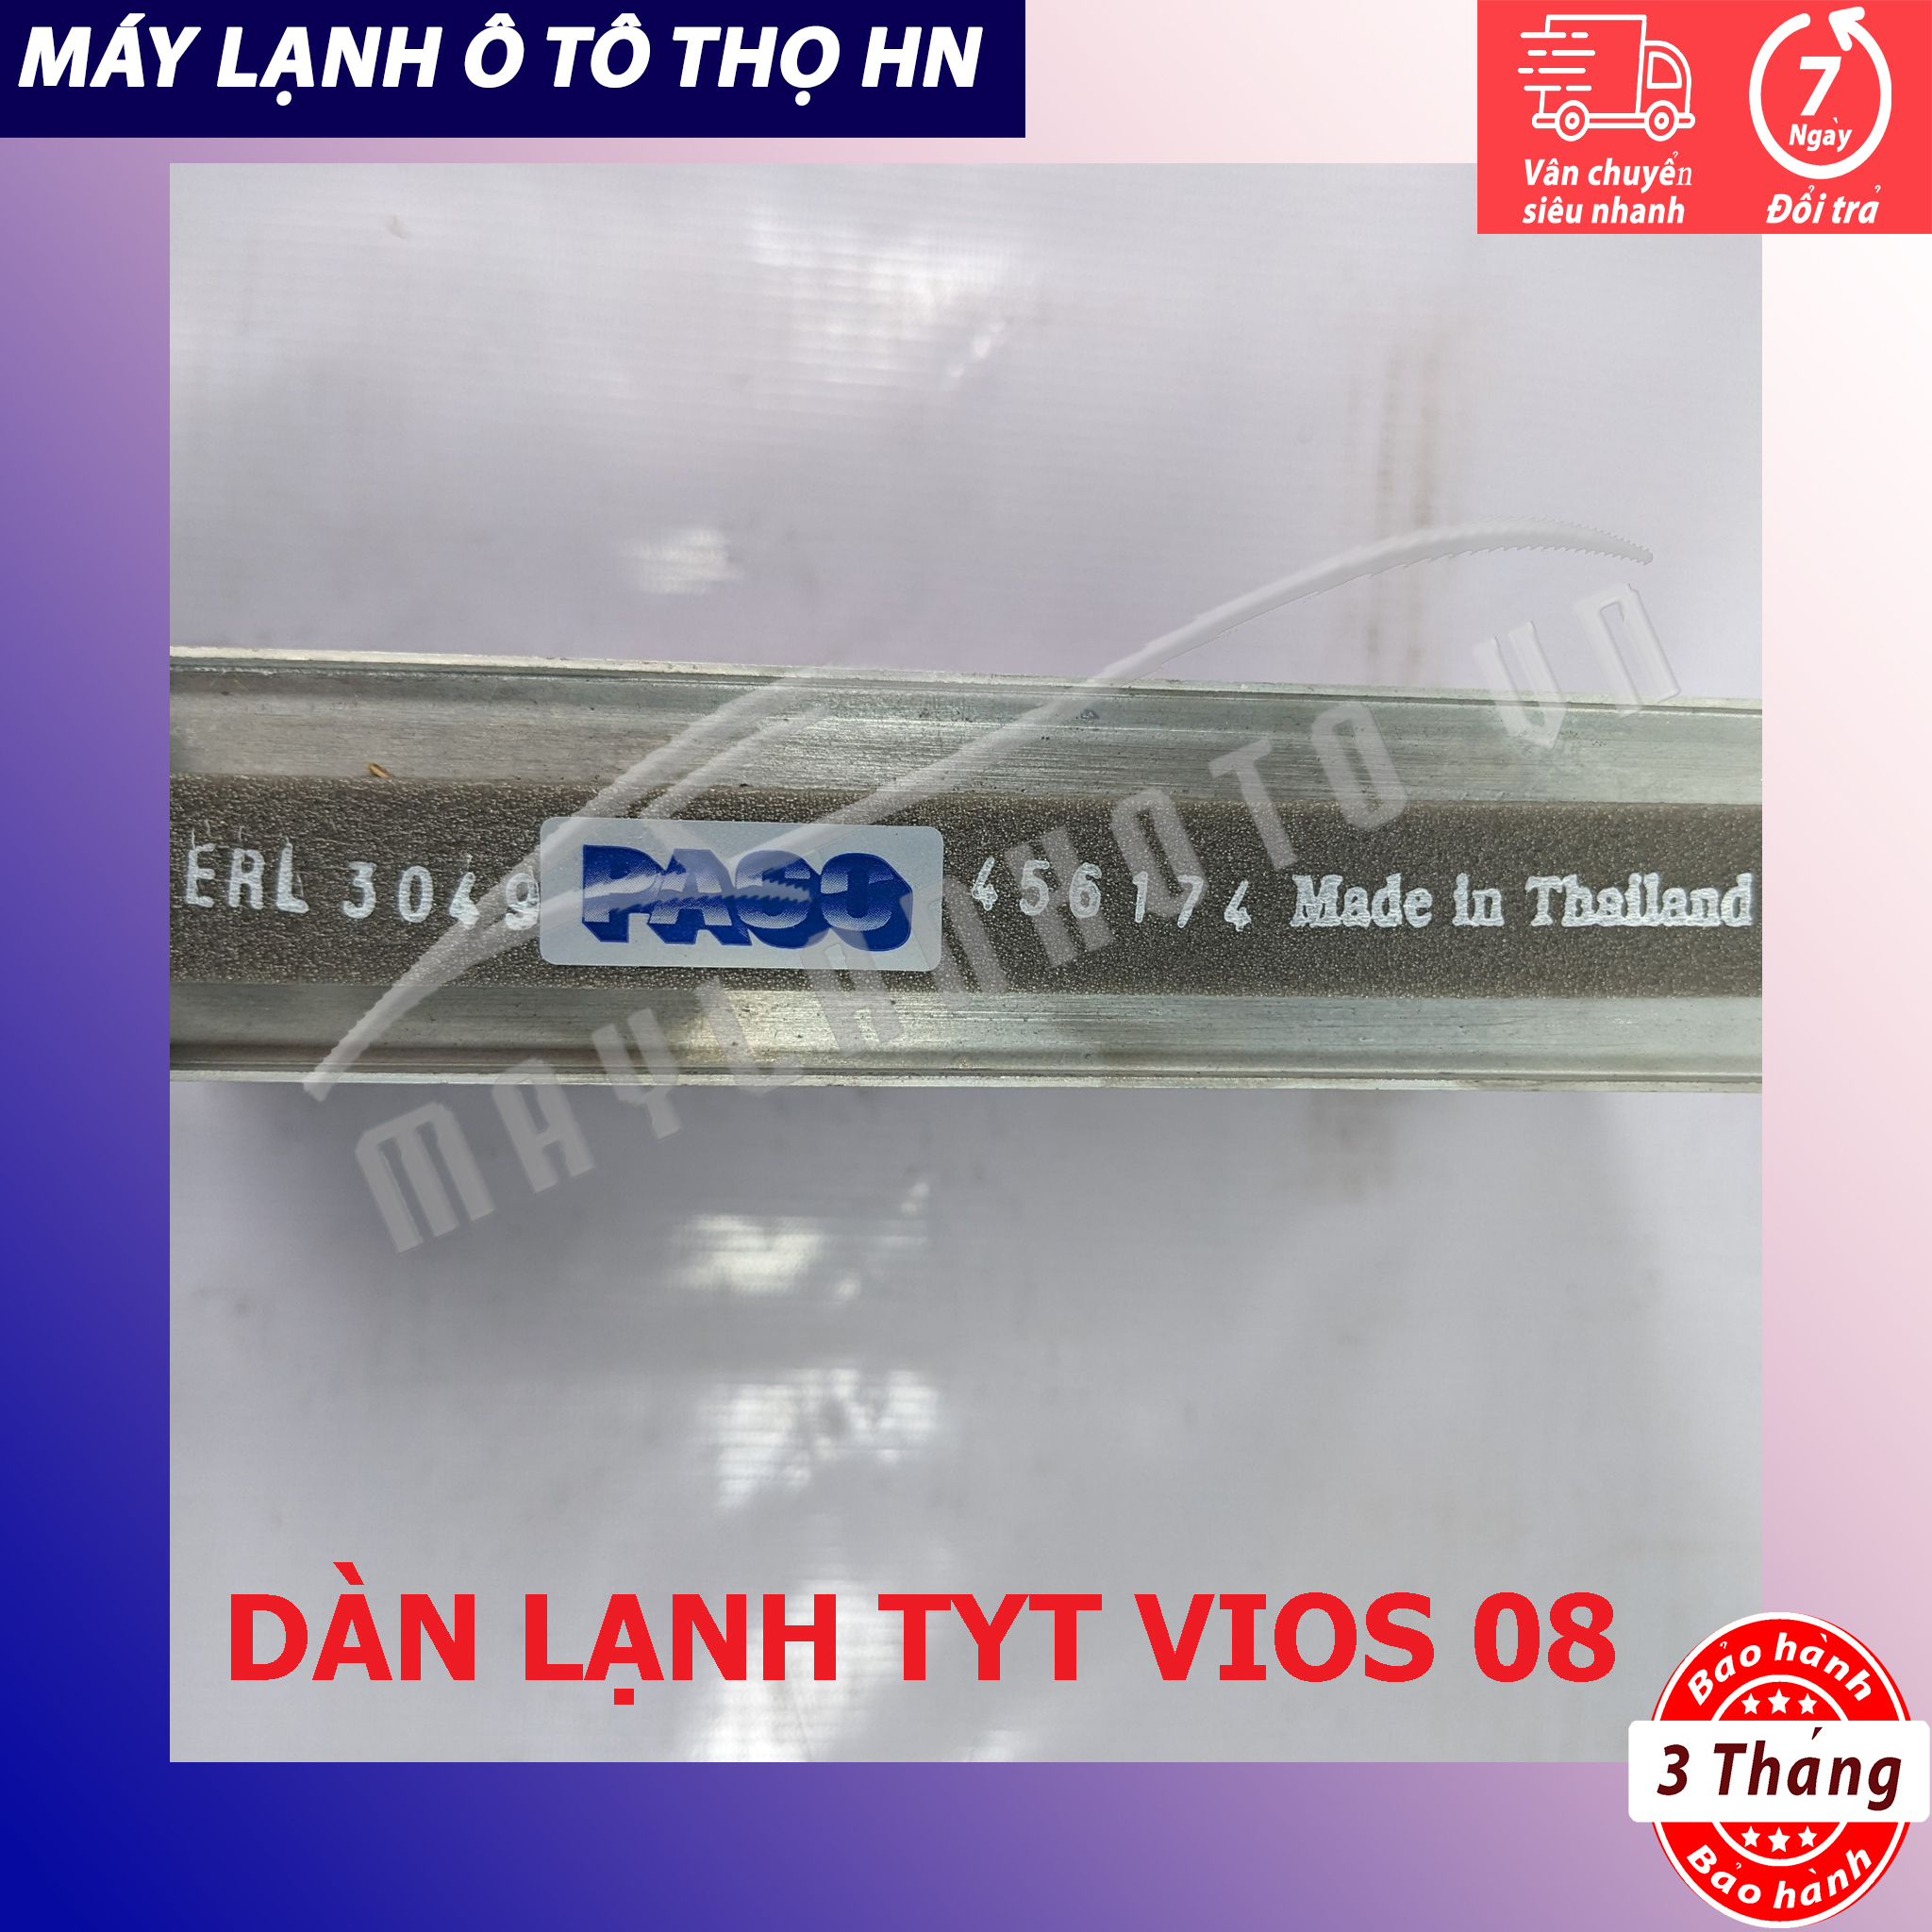 Dàn (giàn) lạnh Toyota Vios 2008 Hàng xịn Thái Lan (hàng chính hãng nhập khẩu trực tiếp)